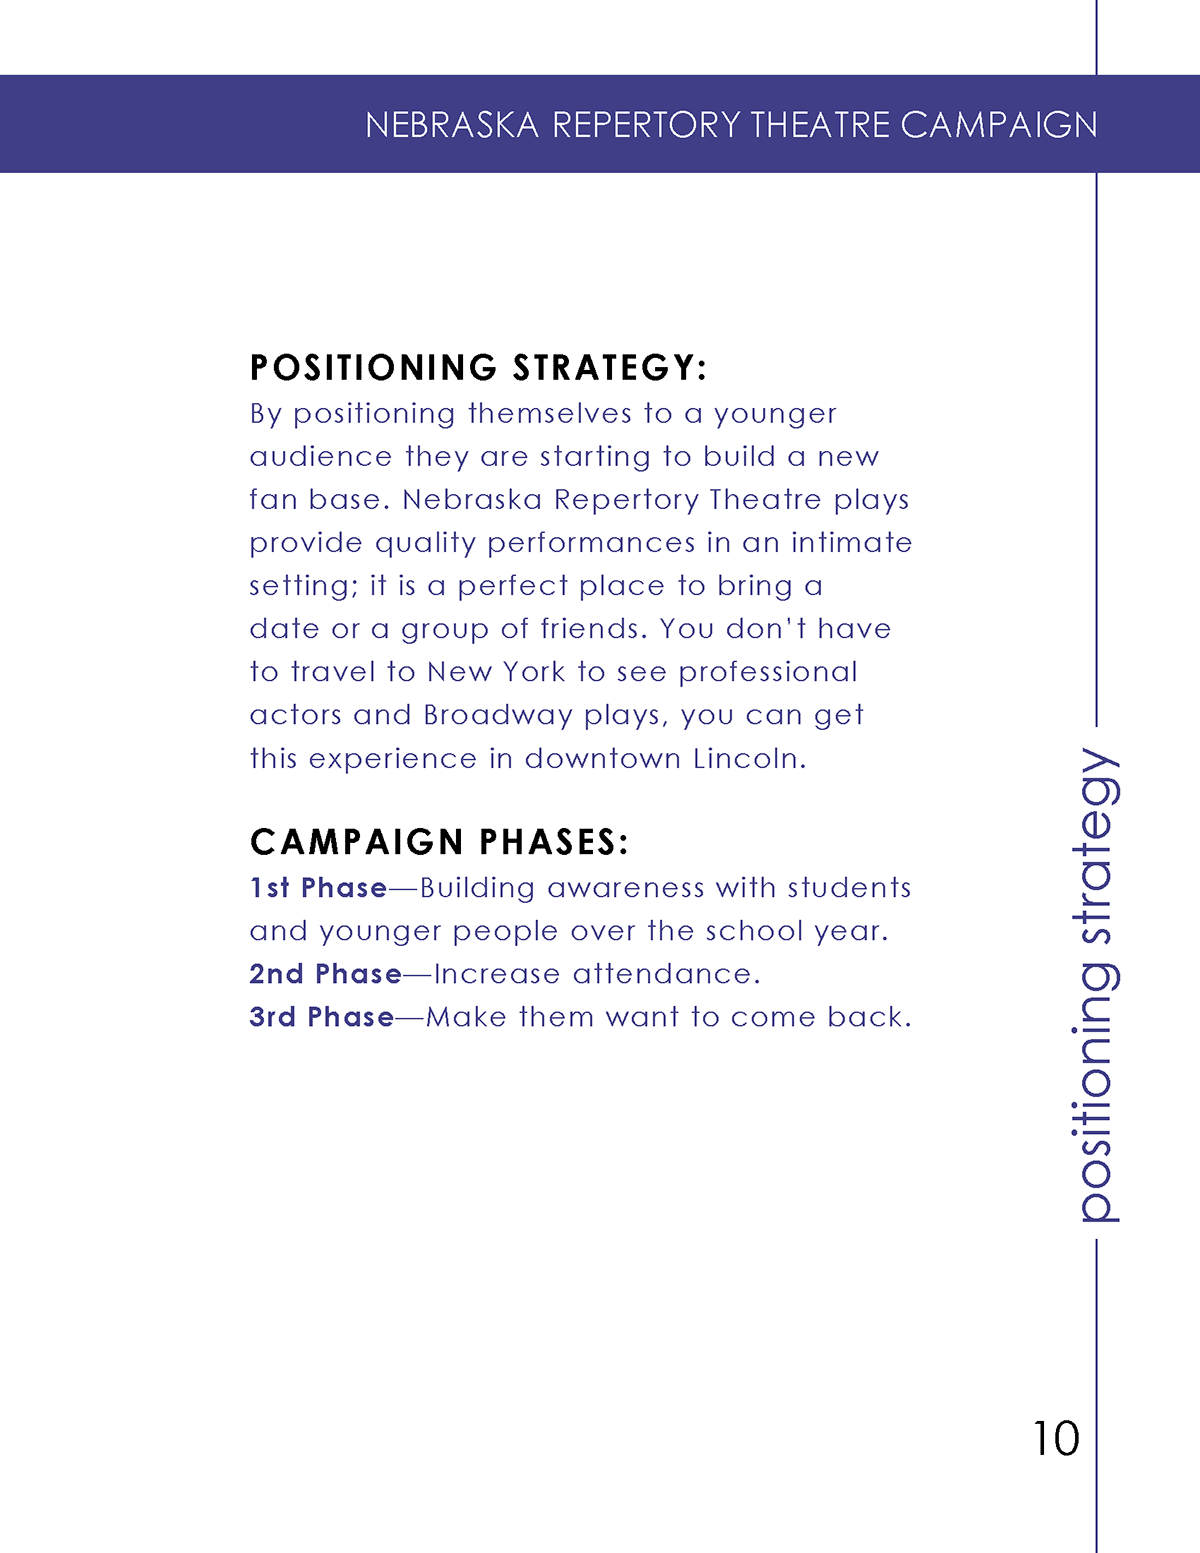 Theatre campaign plan book